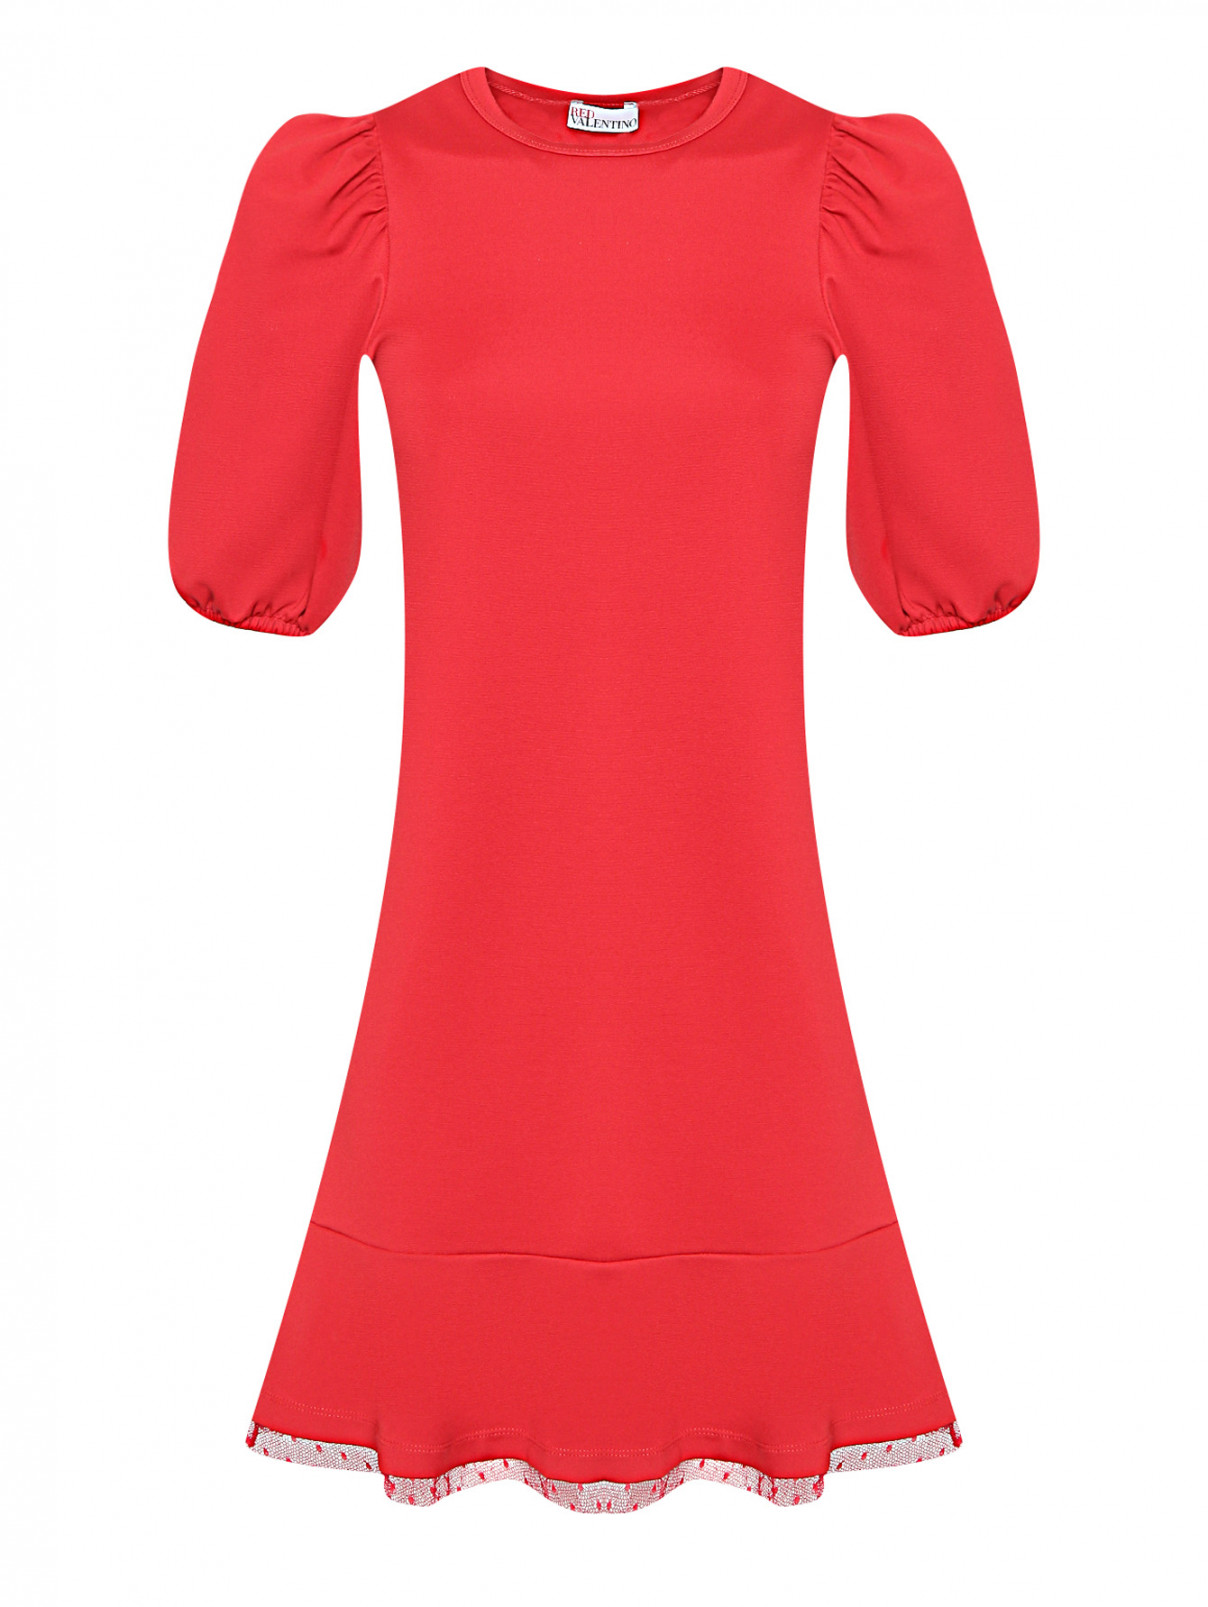 Трикотажное платье с декоративной вставкой из сетки Red Valentino  –  Общий вид  – Цвет:  Красный